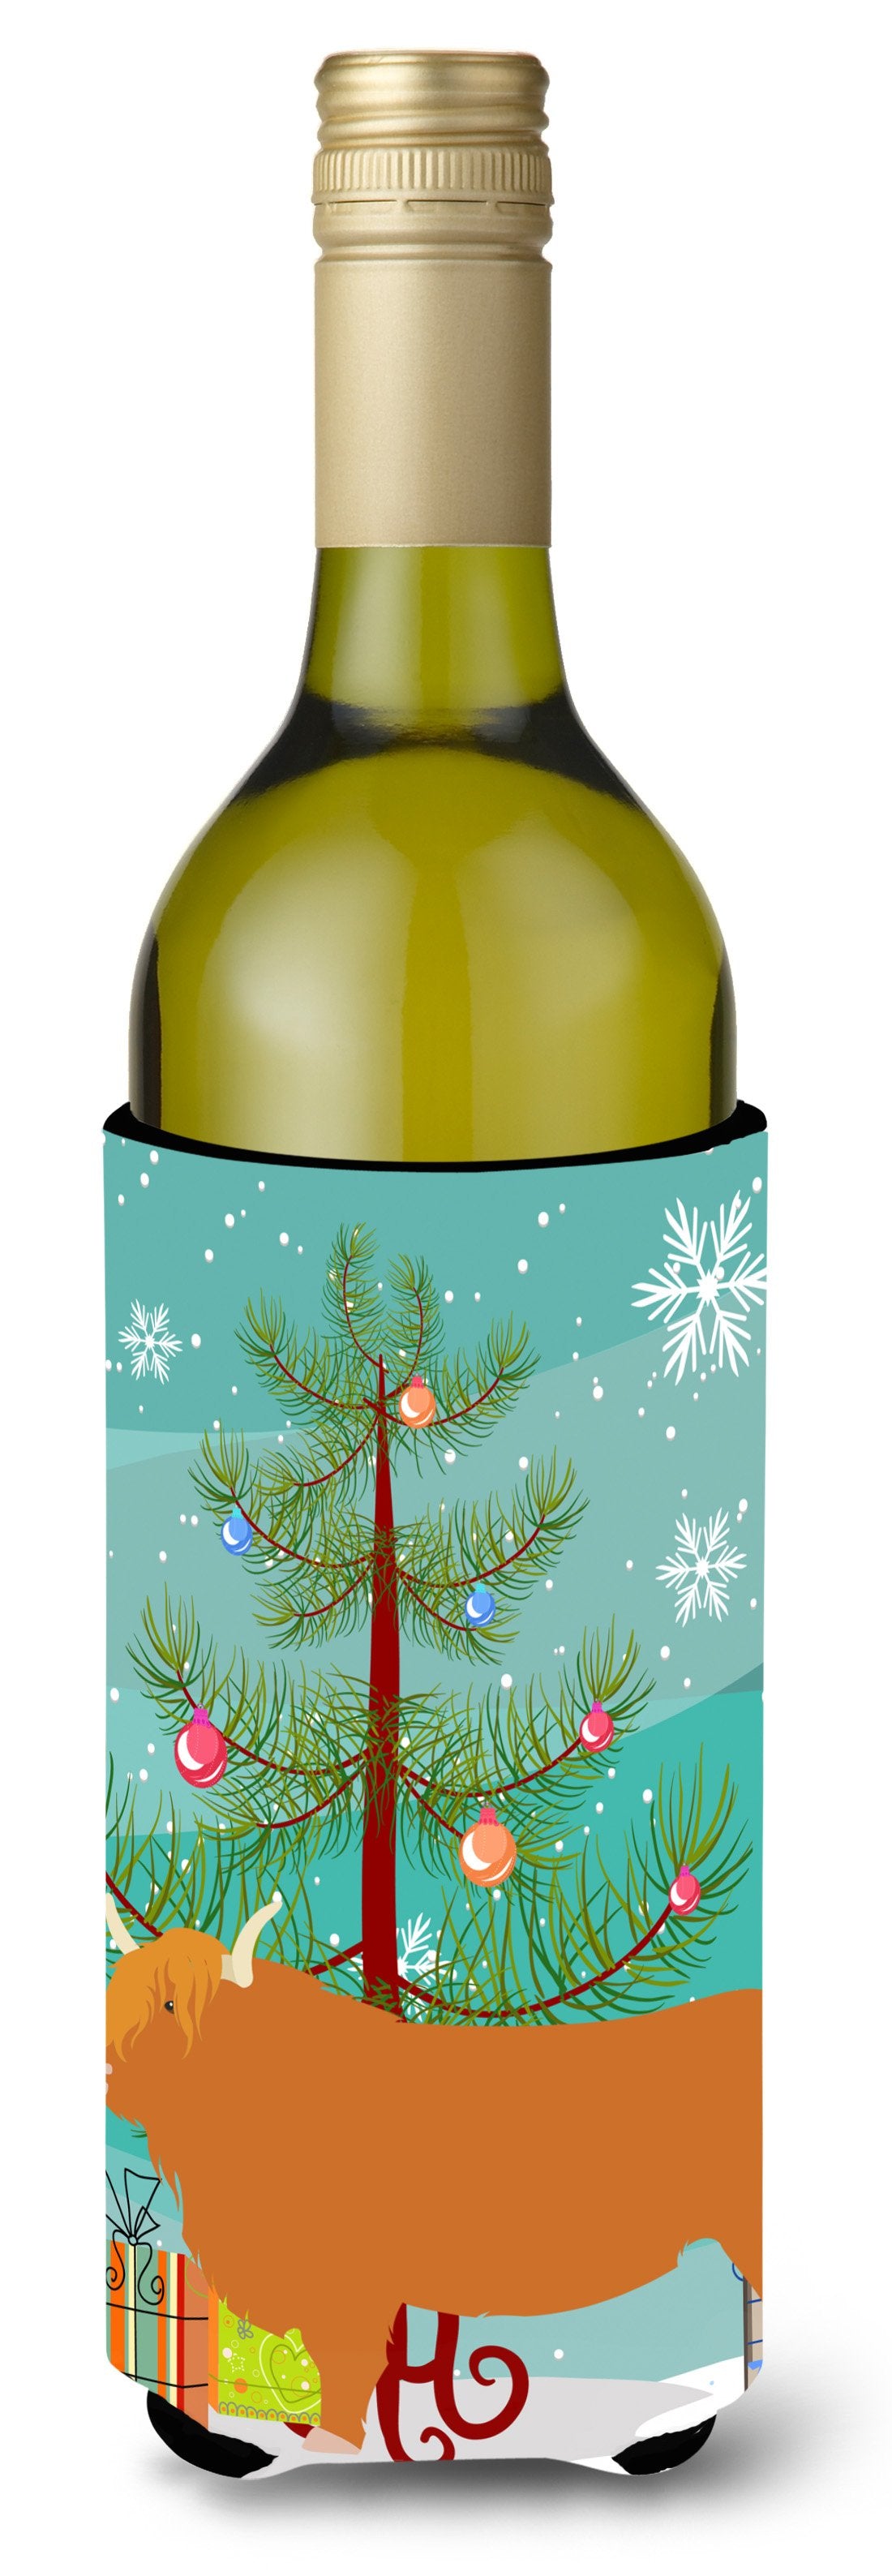 Highland Cow Christmas Wine Bottle Beverge Insulator Hugger BB9187LITERK by Caroline's Treasures